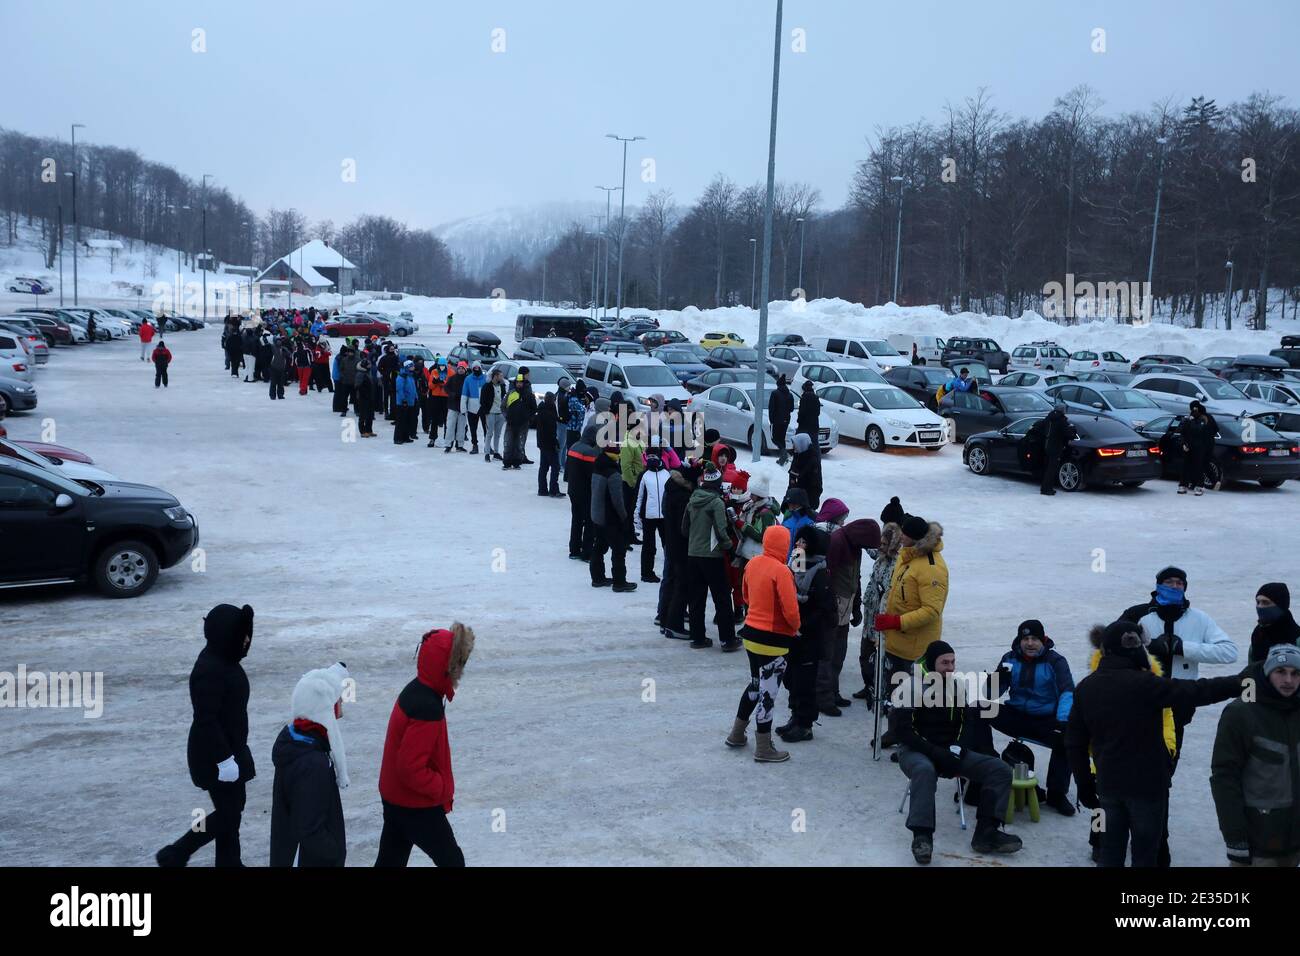 (210117) -- RIJEKA, Jan. 17, 2021 (Xinhua) -- Skiers wait in a queue at Platak ski resort near Rijeka, Croatia, Jan. 16, 2021. (Goran Kovacic/Pixsell via Xinhua) Stock Photo